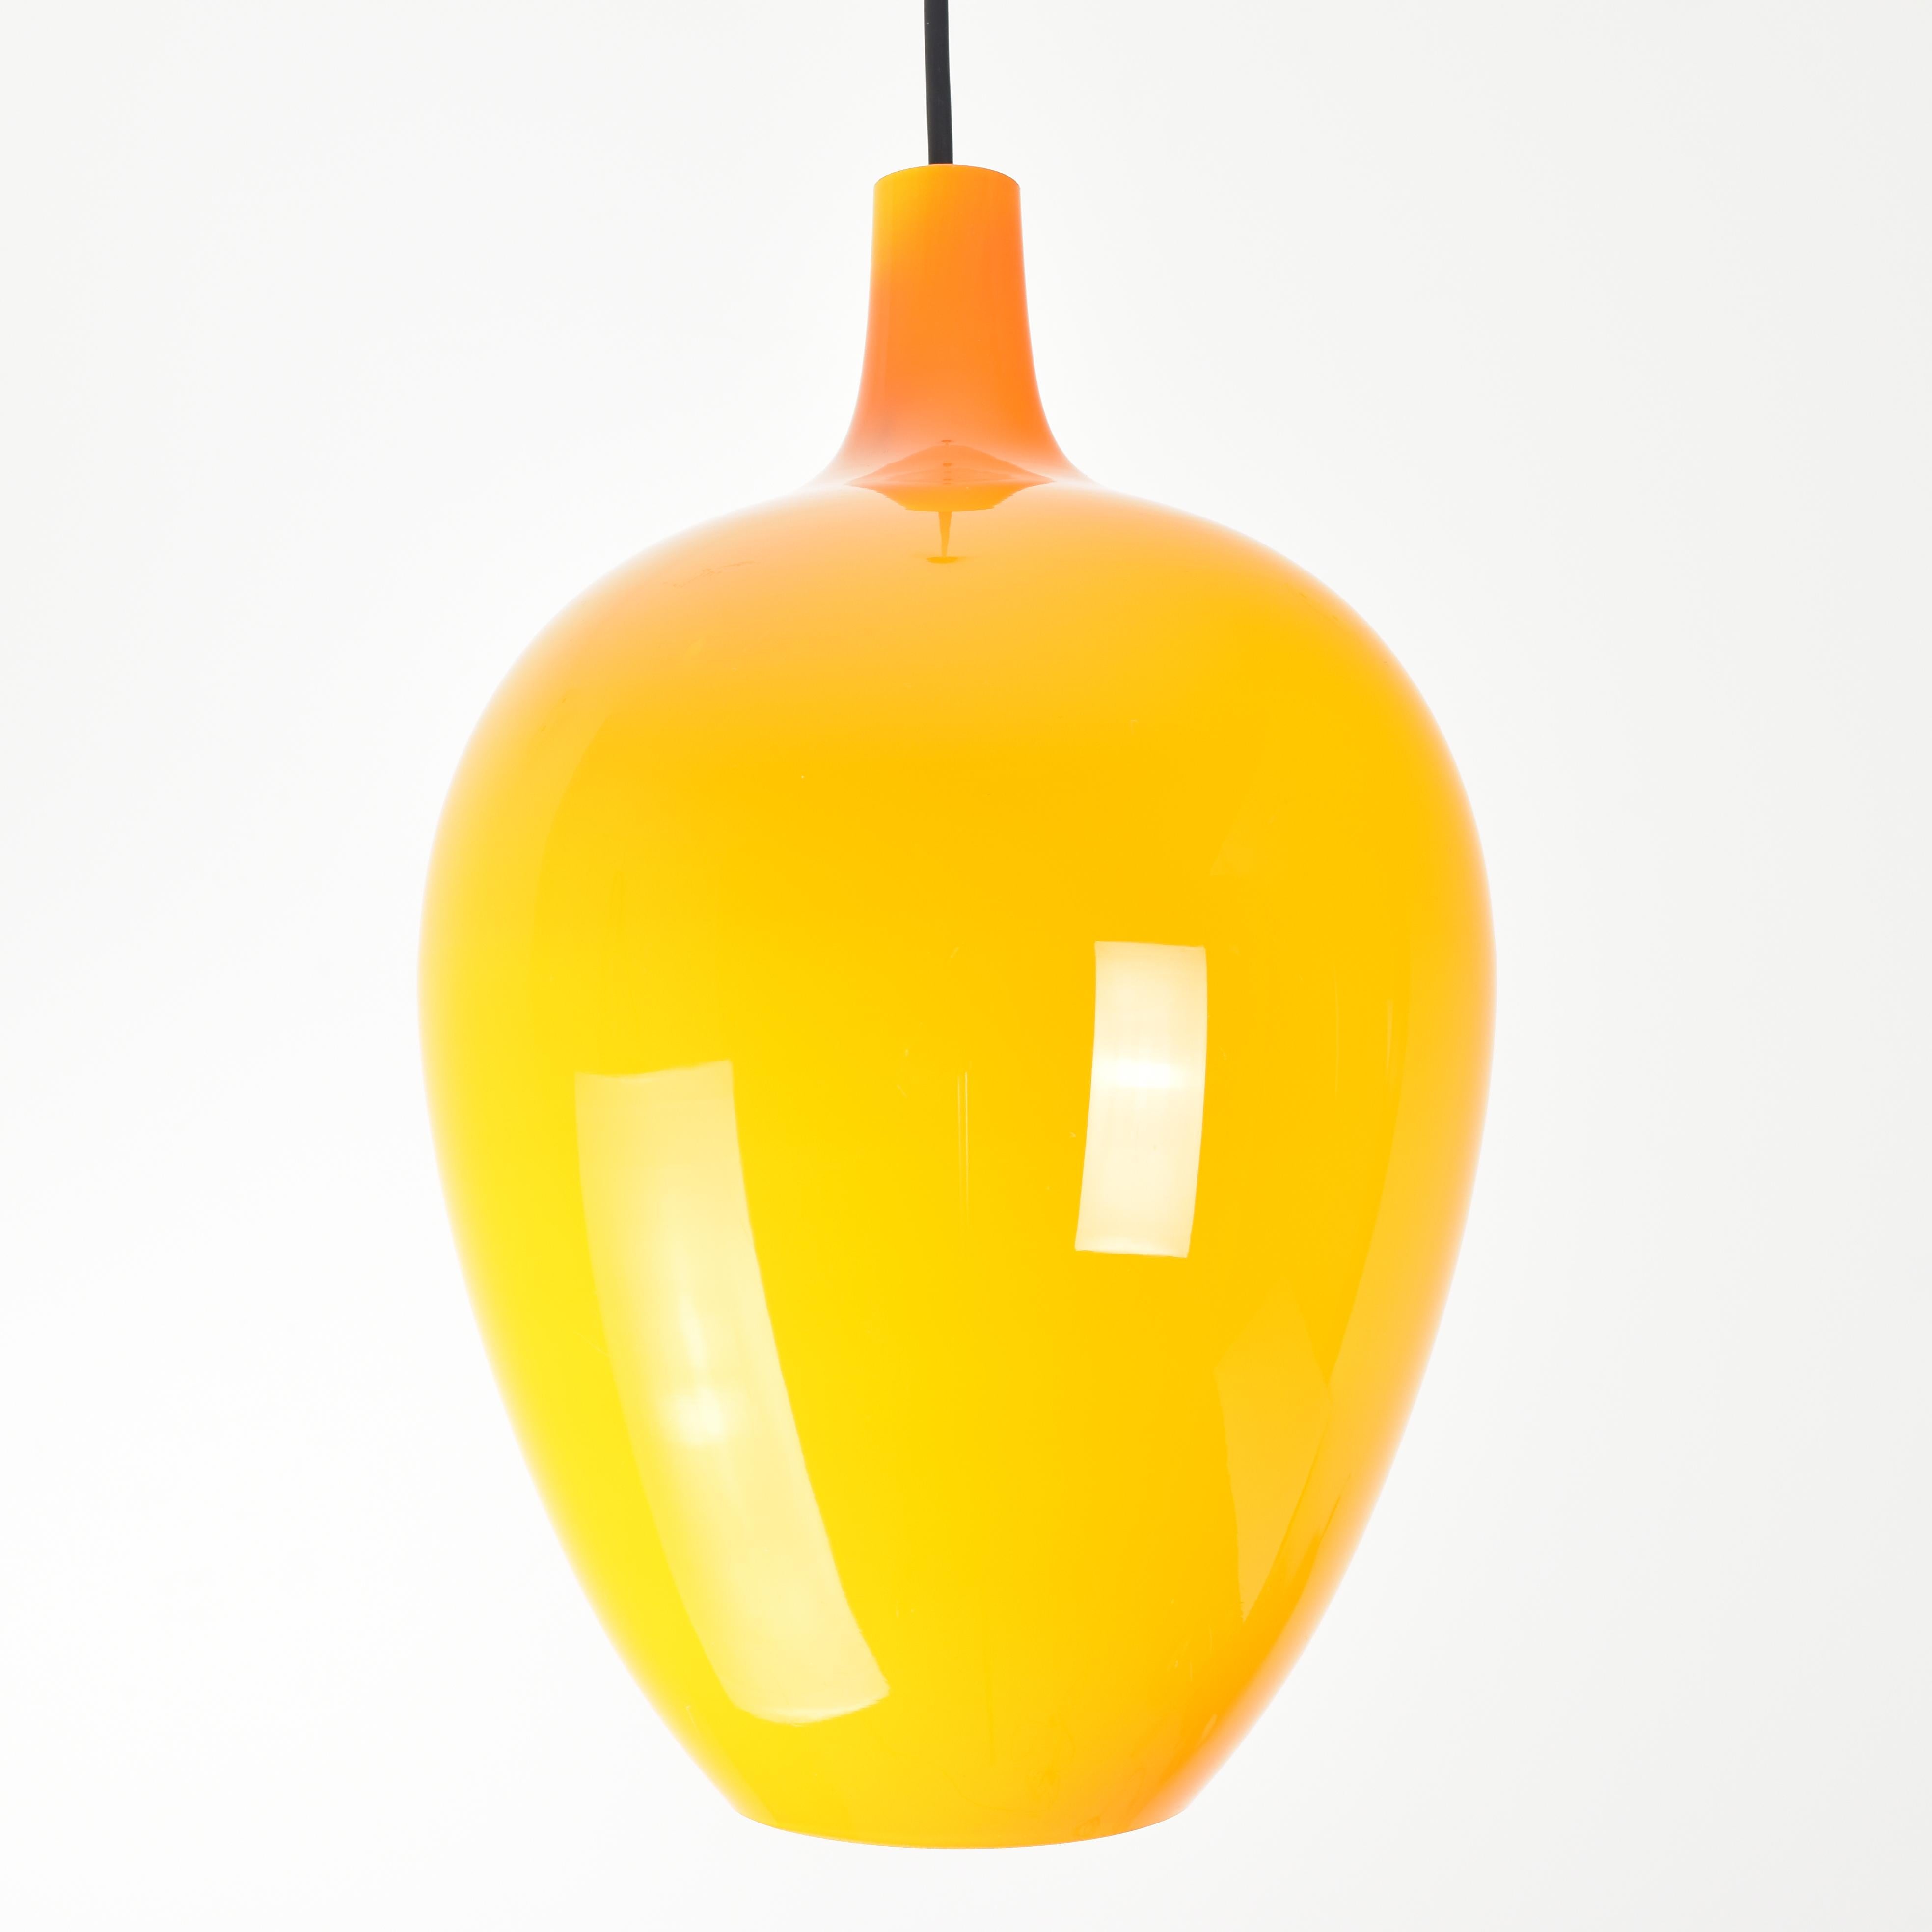 Diese Vintage-Hängeleuchte von Gino Vistosi Murano aus den 1960er Jahren ist ein beeindruckendes Beleuchtungsobjekt, das sich durch seinen orangefarbenen Glasschirm auszeichnet. Die Leuchte hat eine schlanke und elegante Silhouette.

Der Schirm ist